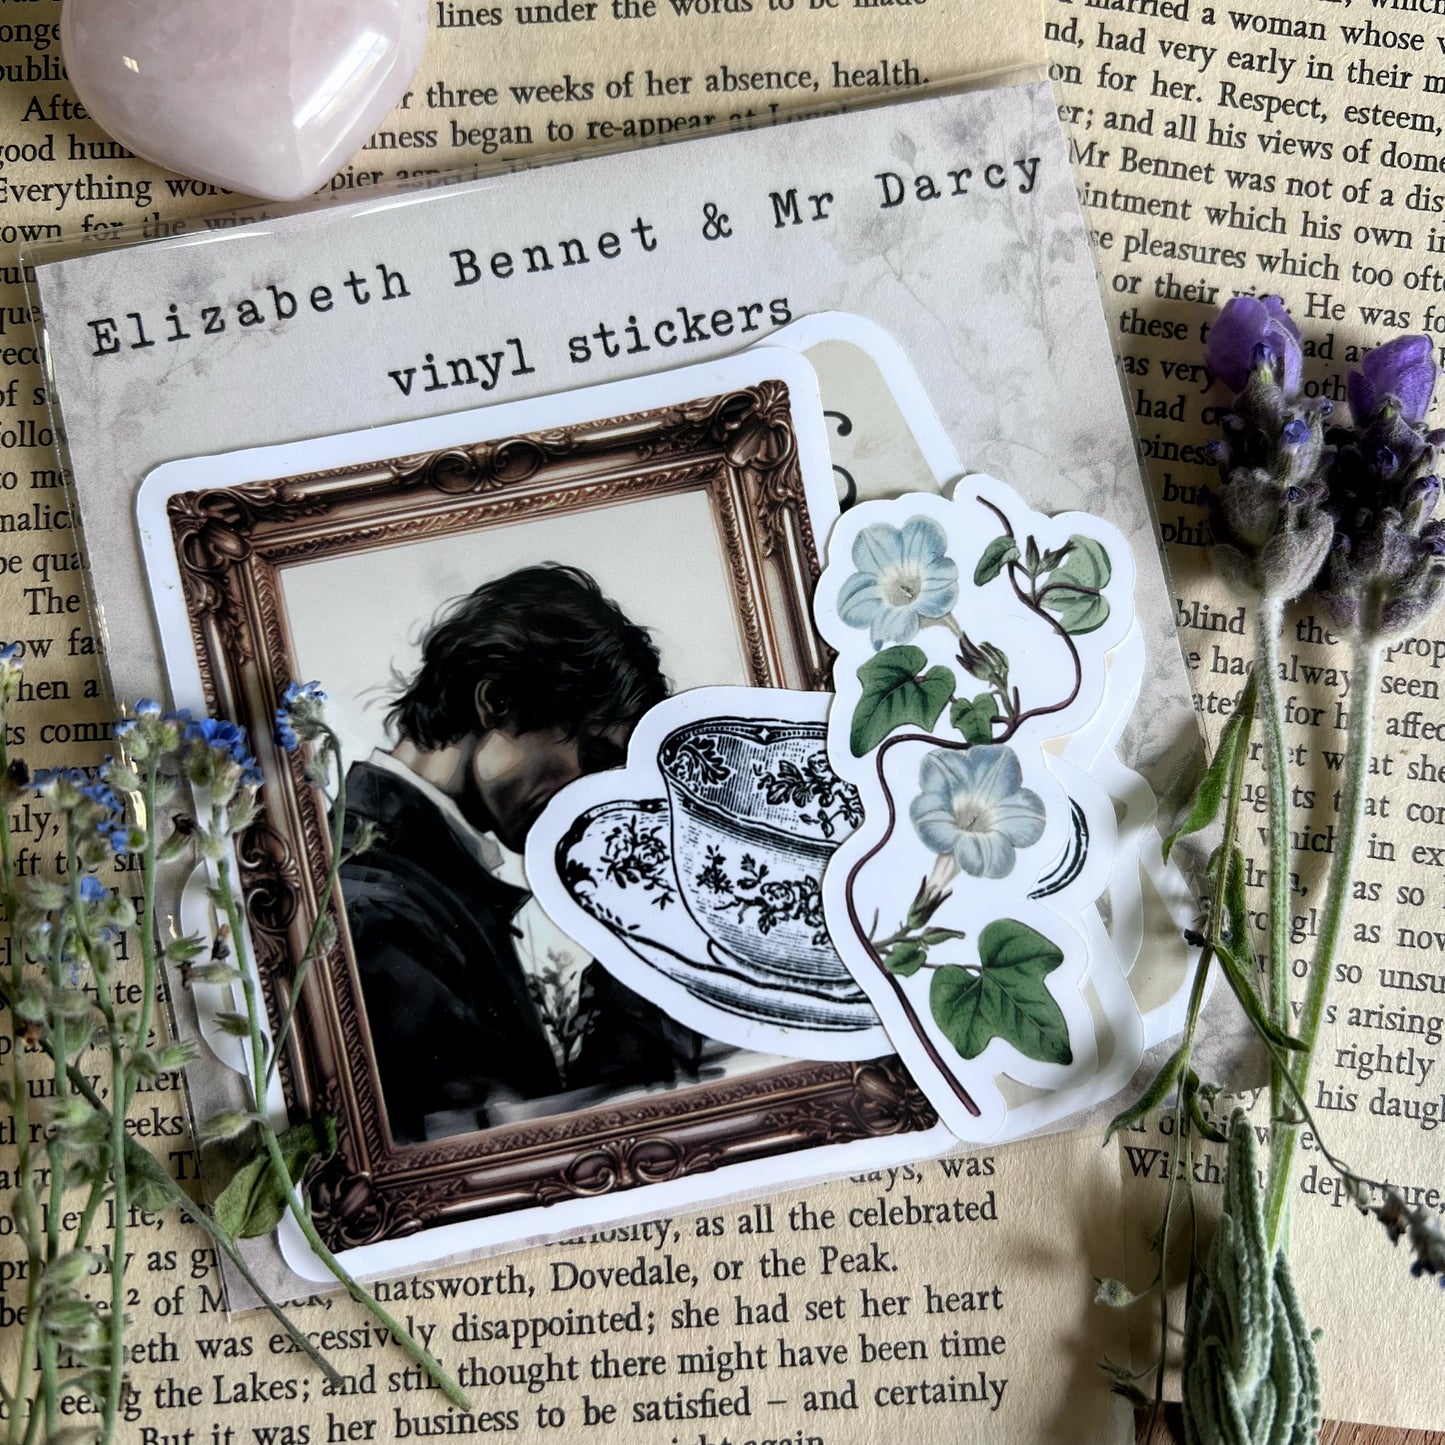 Elizabeth Bennet & Mr Darcy - vinyl stickers